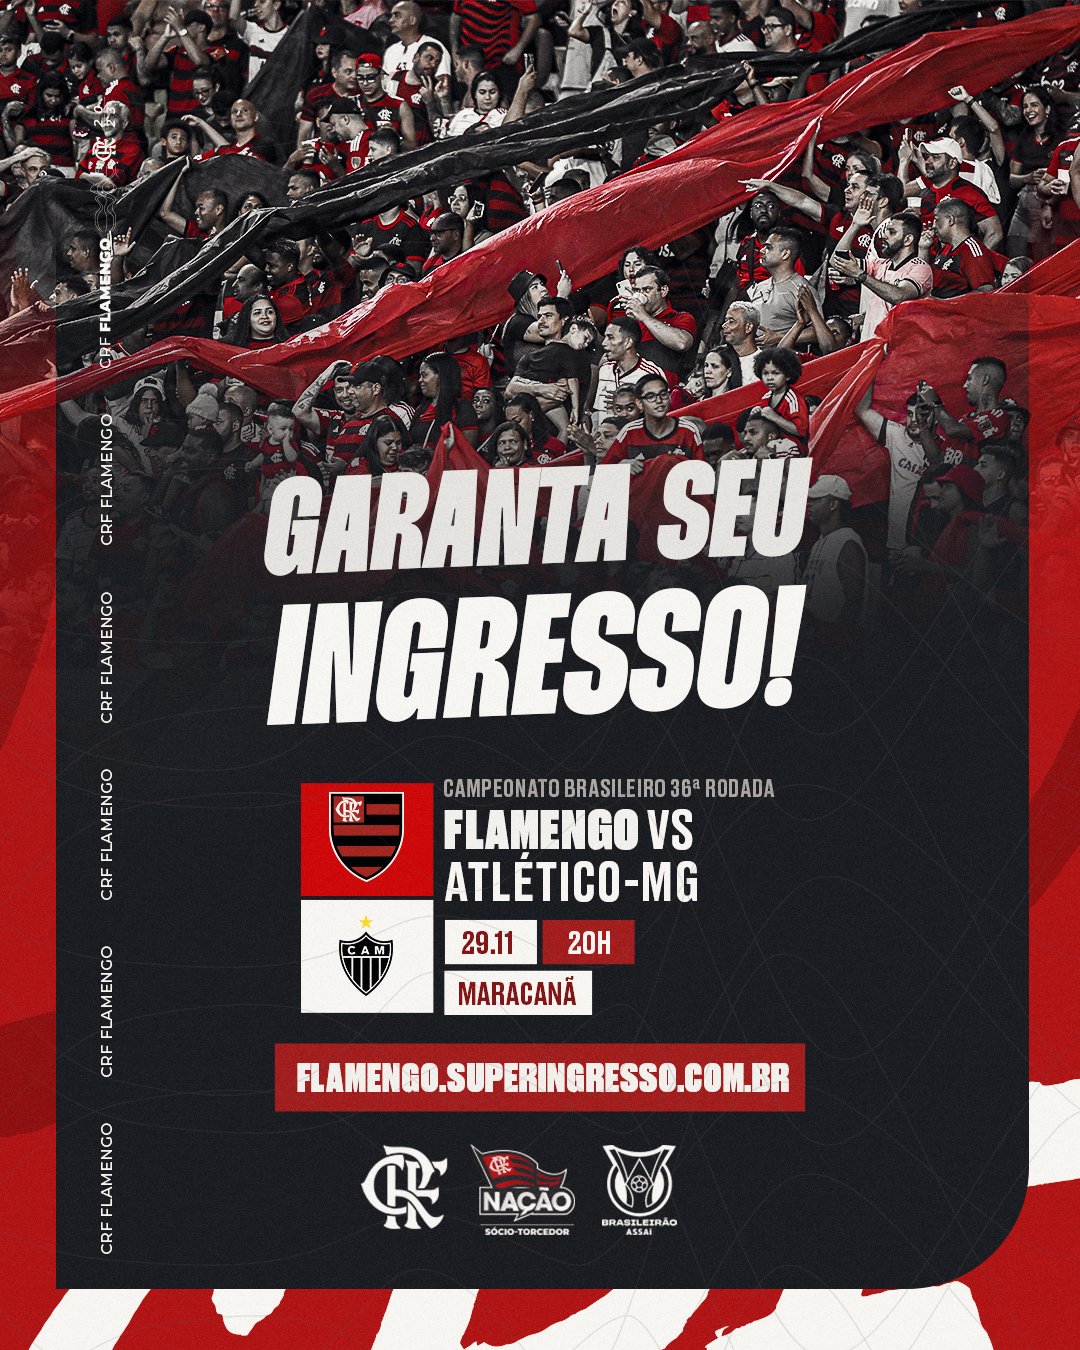 O Coringão voltou: ingressos de jogos contra CSA, Flamengo e Montevideo  Wanderers estão à venda para sócios do Fiel Torcedor